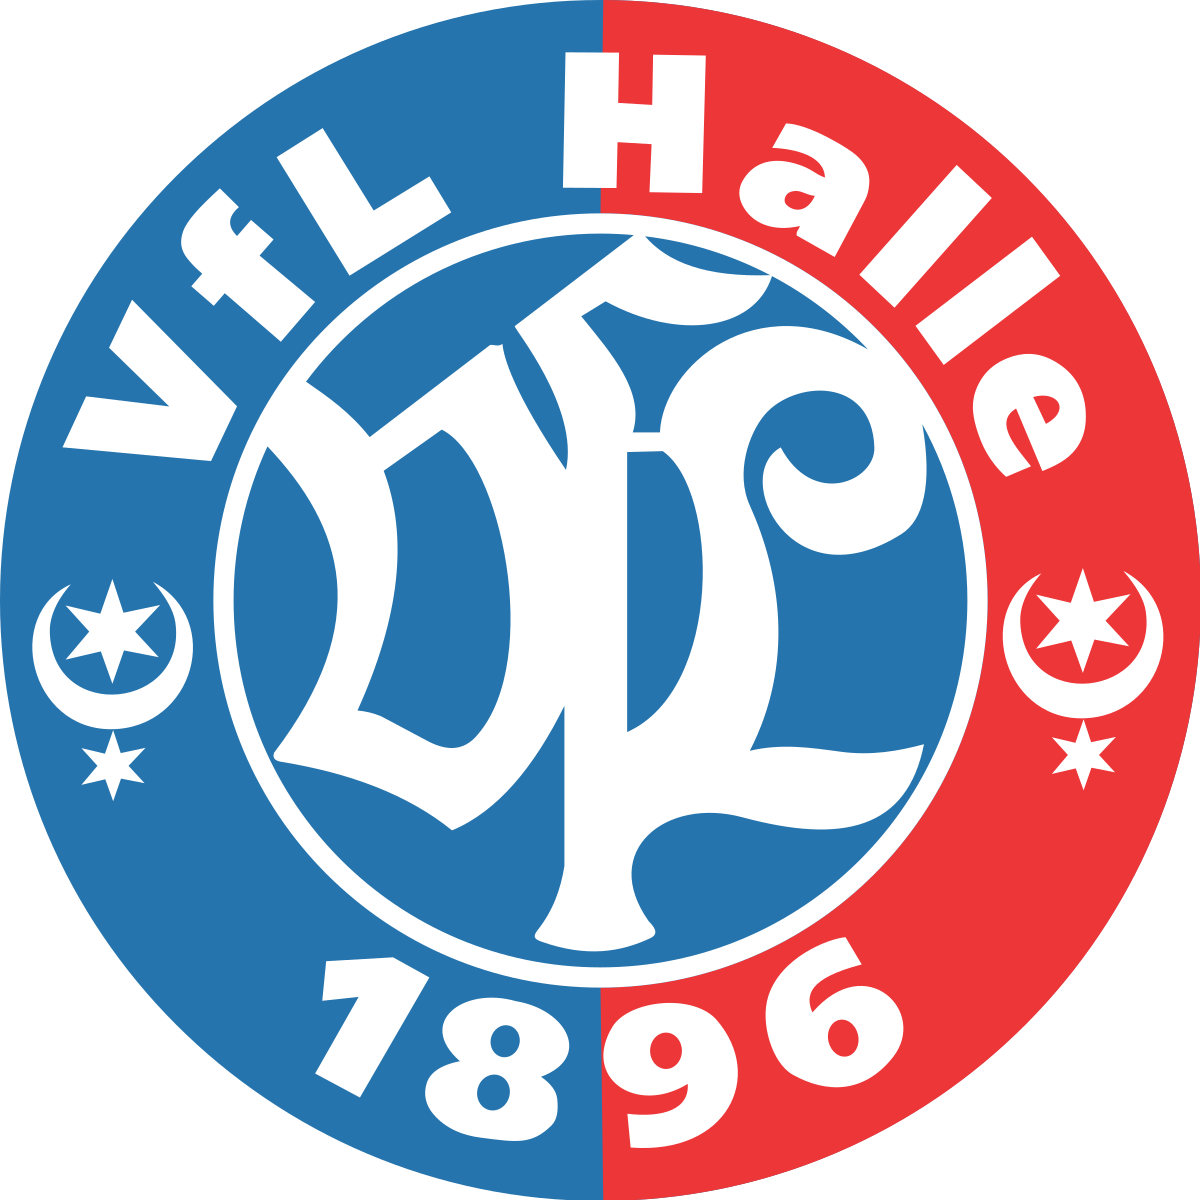 Verein für Leibesübungen Halle 1896 e.V. team logo